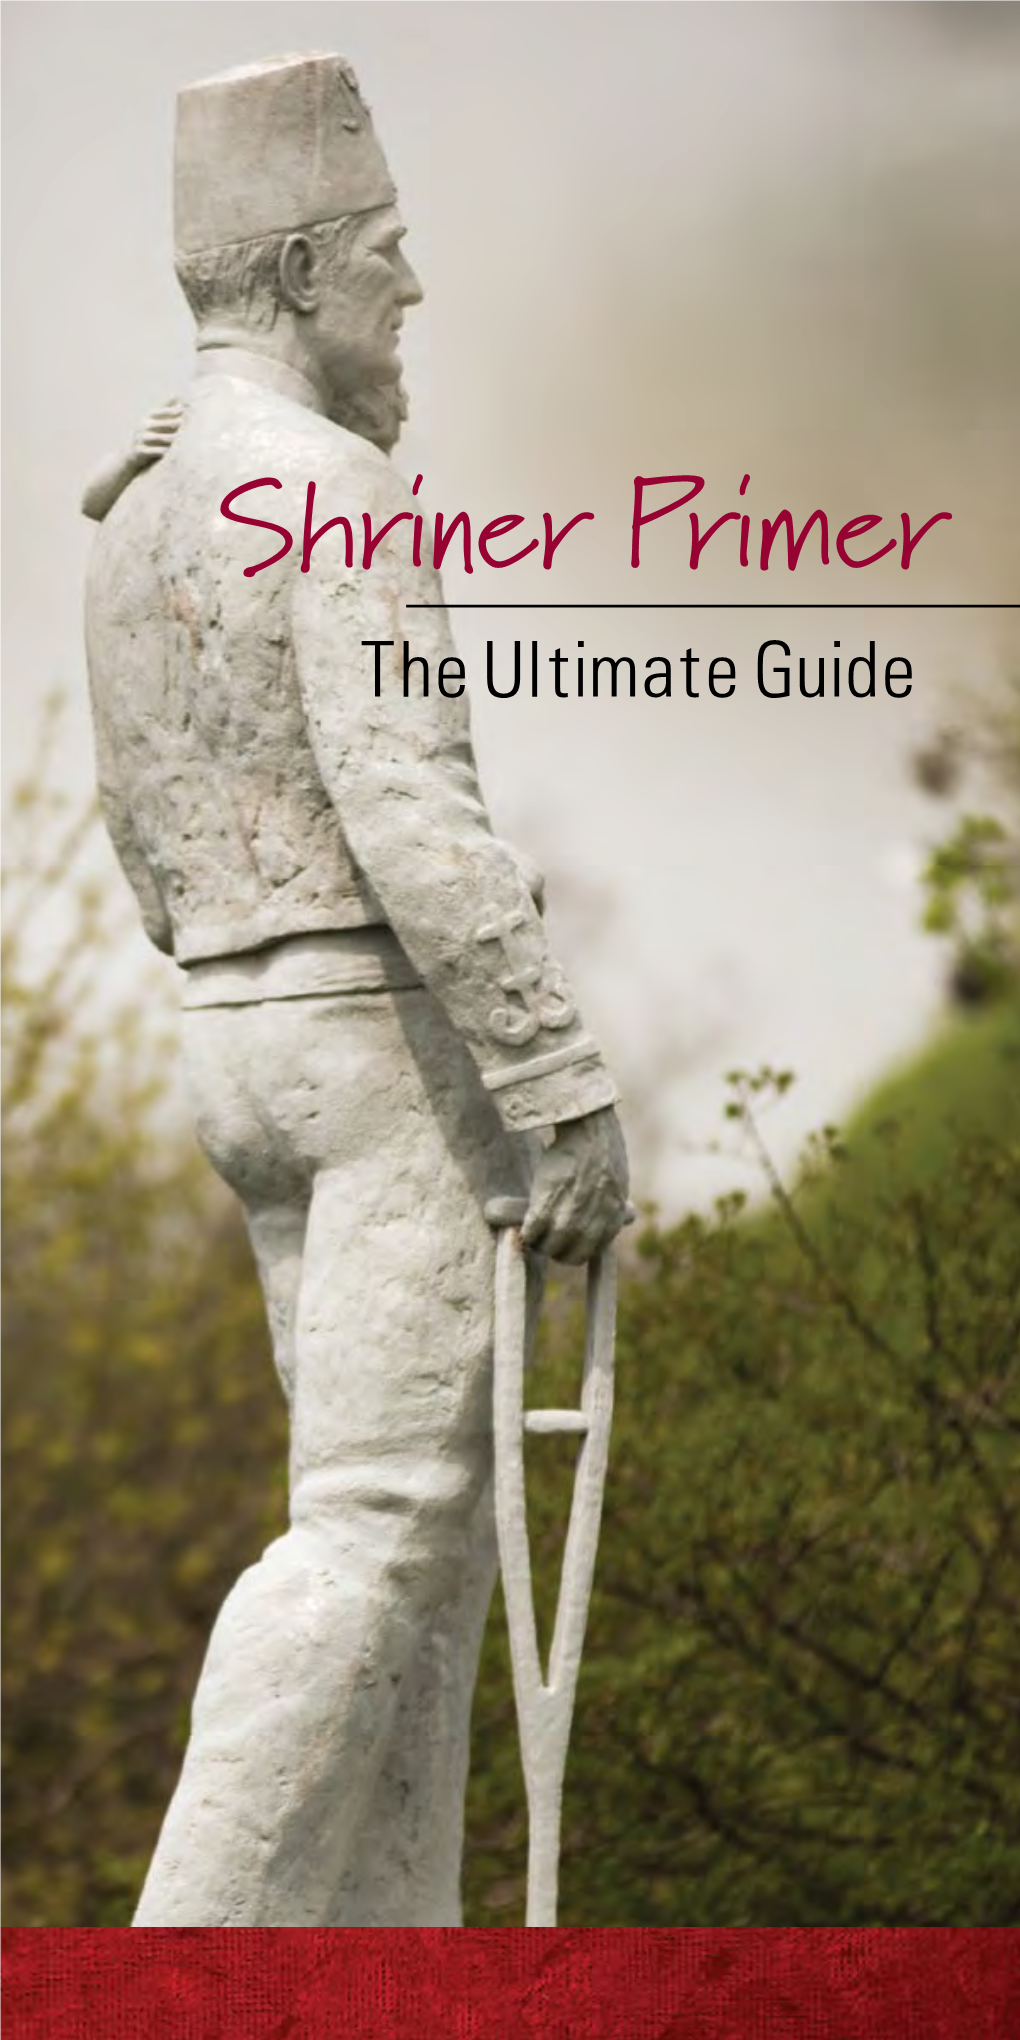 Shriner Primer the Ultimate Guide